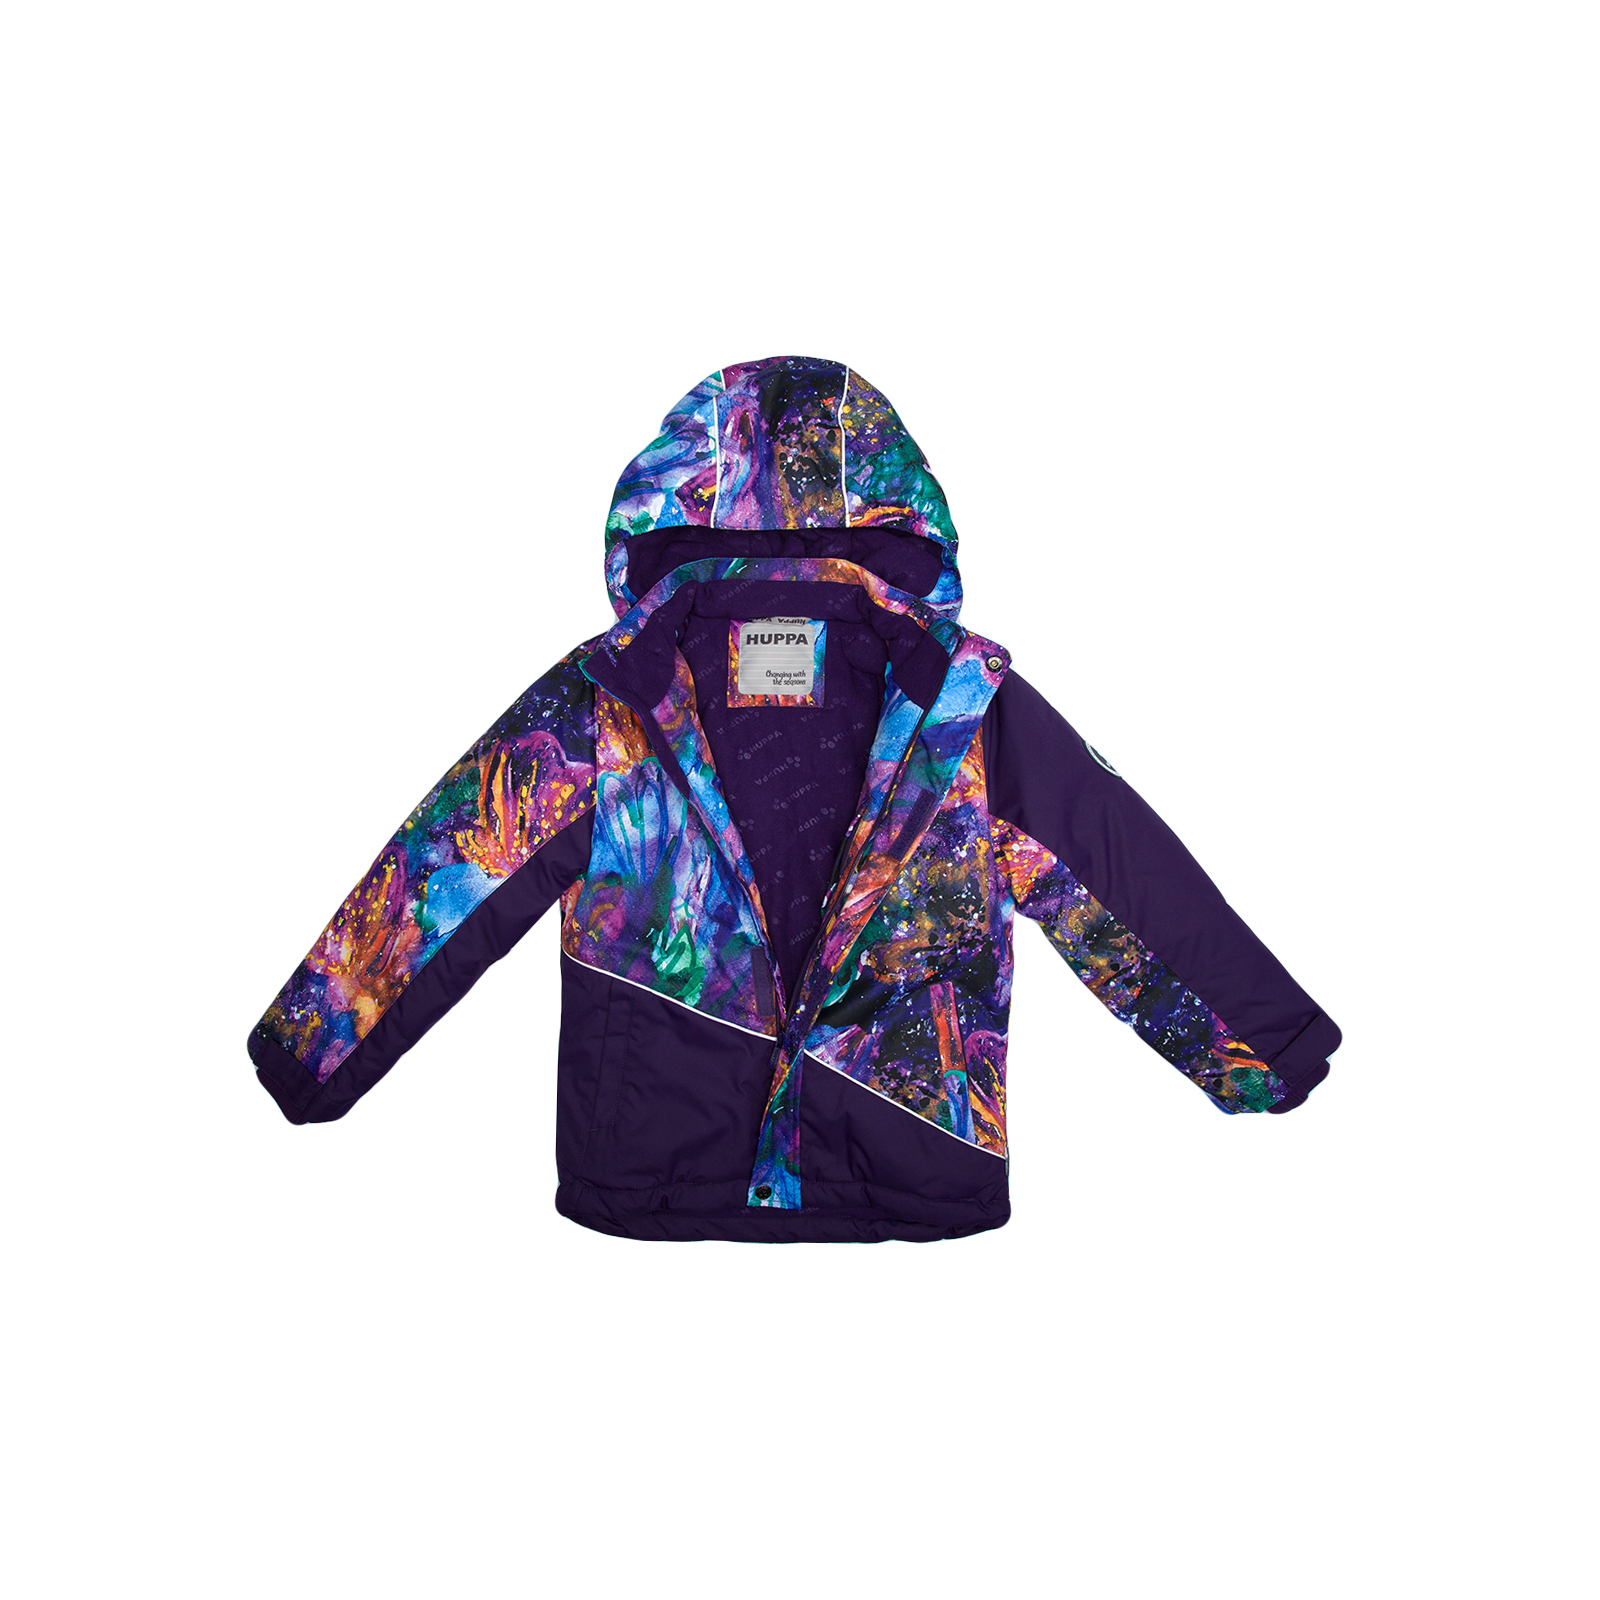 Куртка Huppa ALEX 1 17800130 пурпур с принтом/тёмно-лилoвый 116 (4741468986968) изображение 3